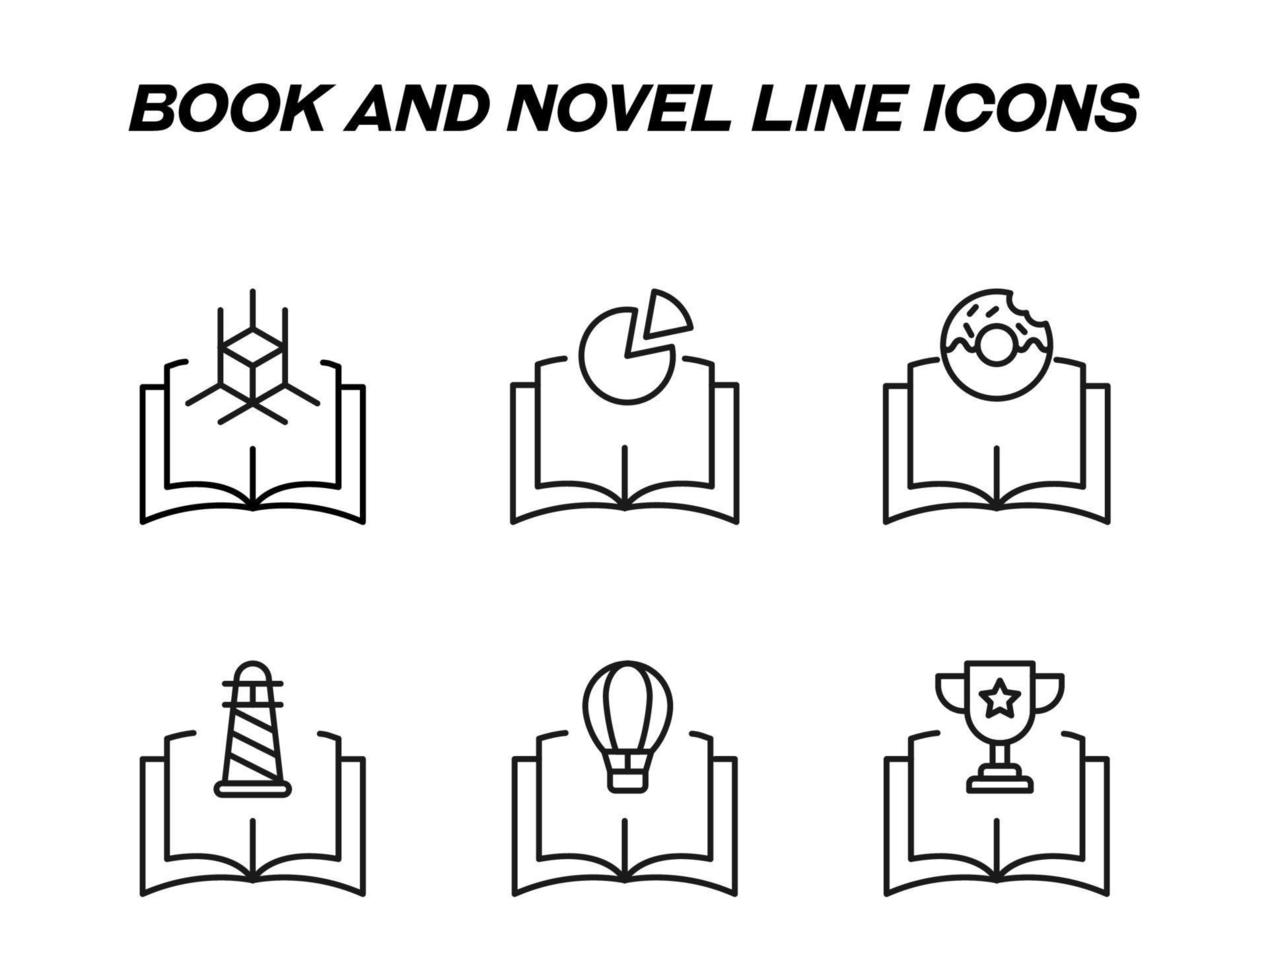 livro, leitura, educação e conceito de romance. sinais de vetor em estilo simples. conjunto de ícones de linha de cubo, gráfico de pizza, rosquinha, farol, balão, copo vencedor sobre o livro